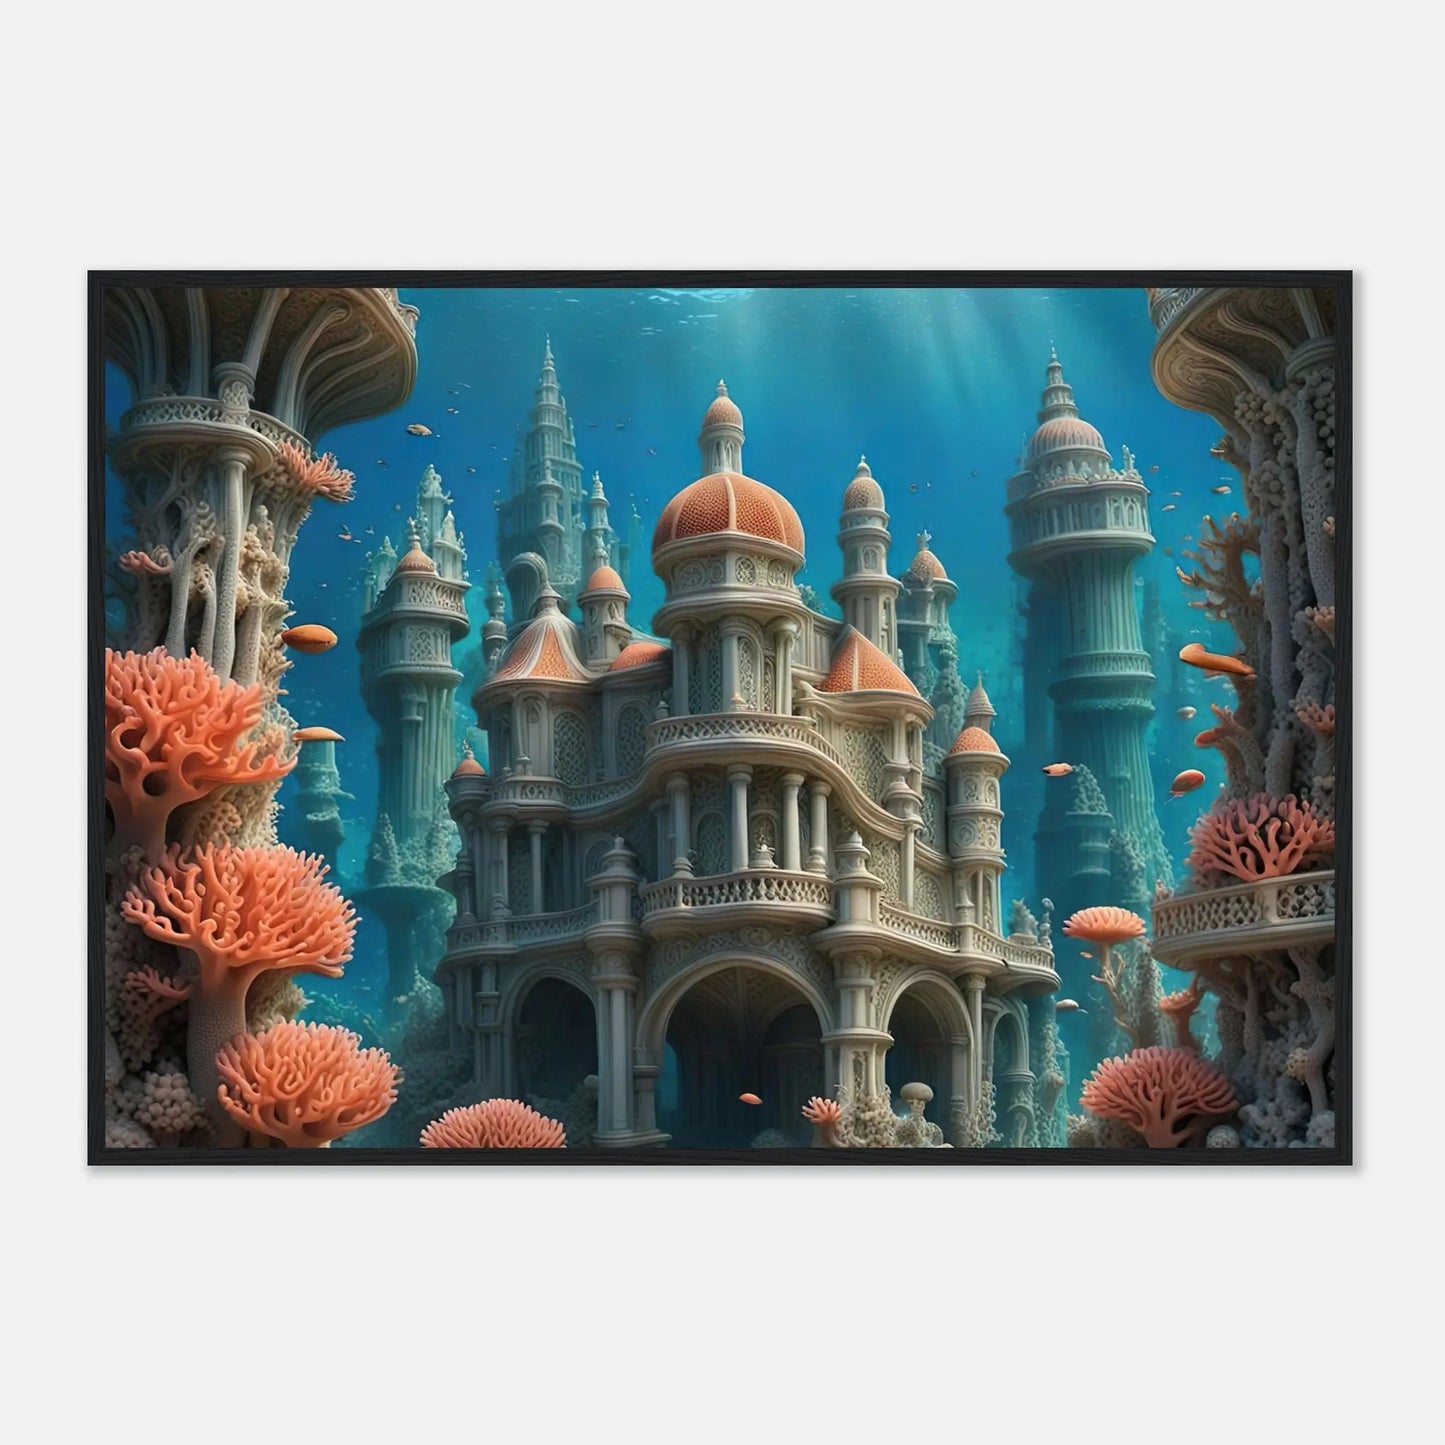 Gerahmtes Premium-Poster - Unterwasserwelt - Digitaler Stil, KI-Kunst - RolConArt, Unterwasserlandschaften, 70x100-cm-28x40-Schwarzer-Rahmen